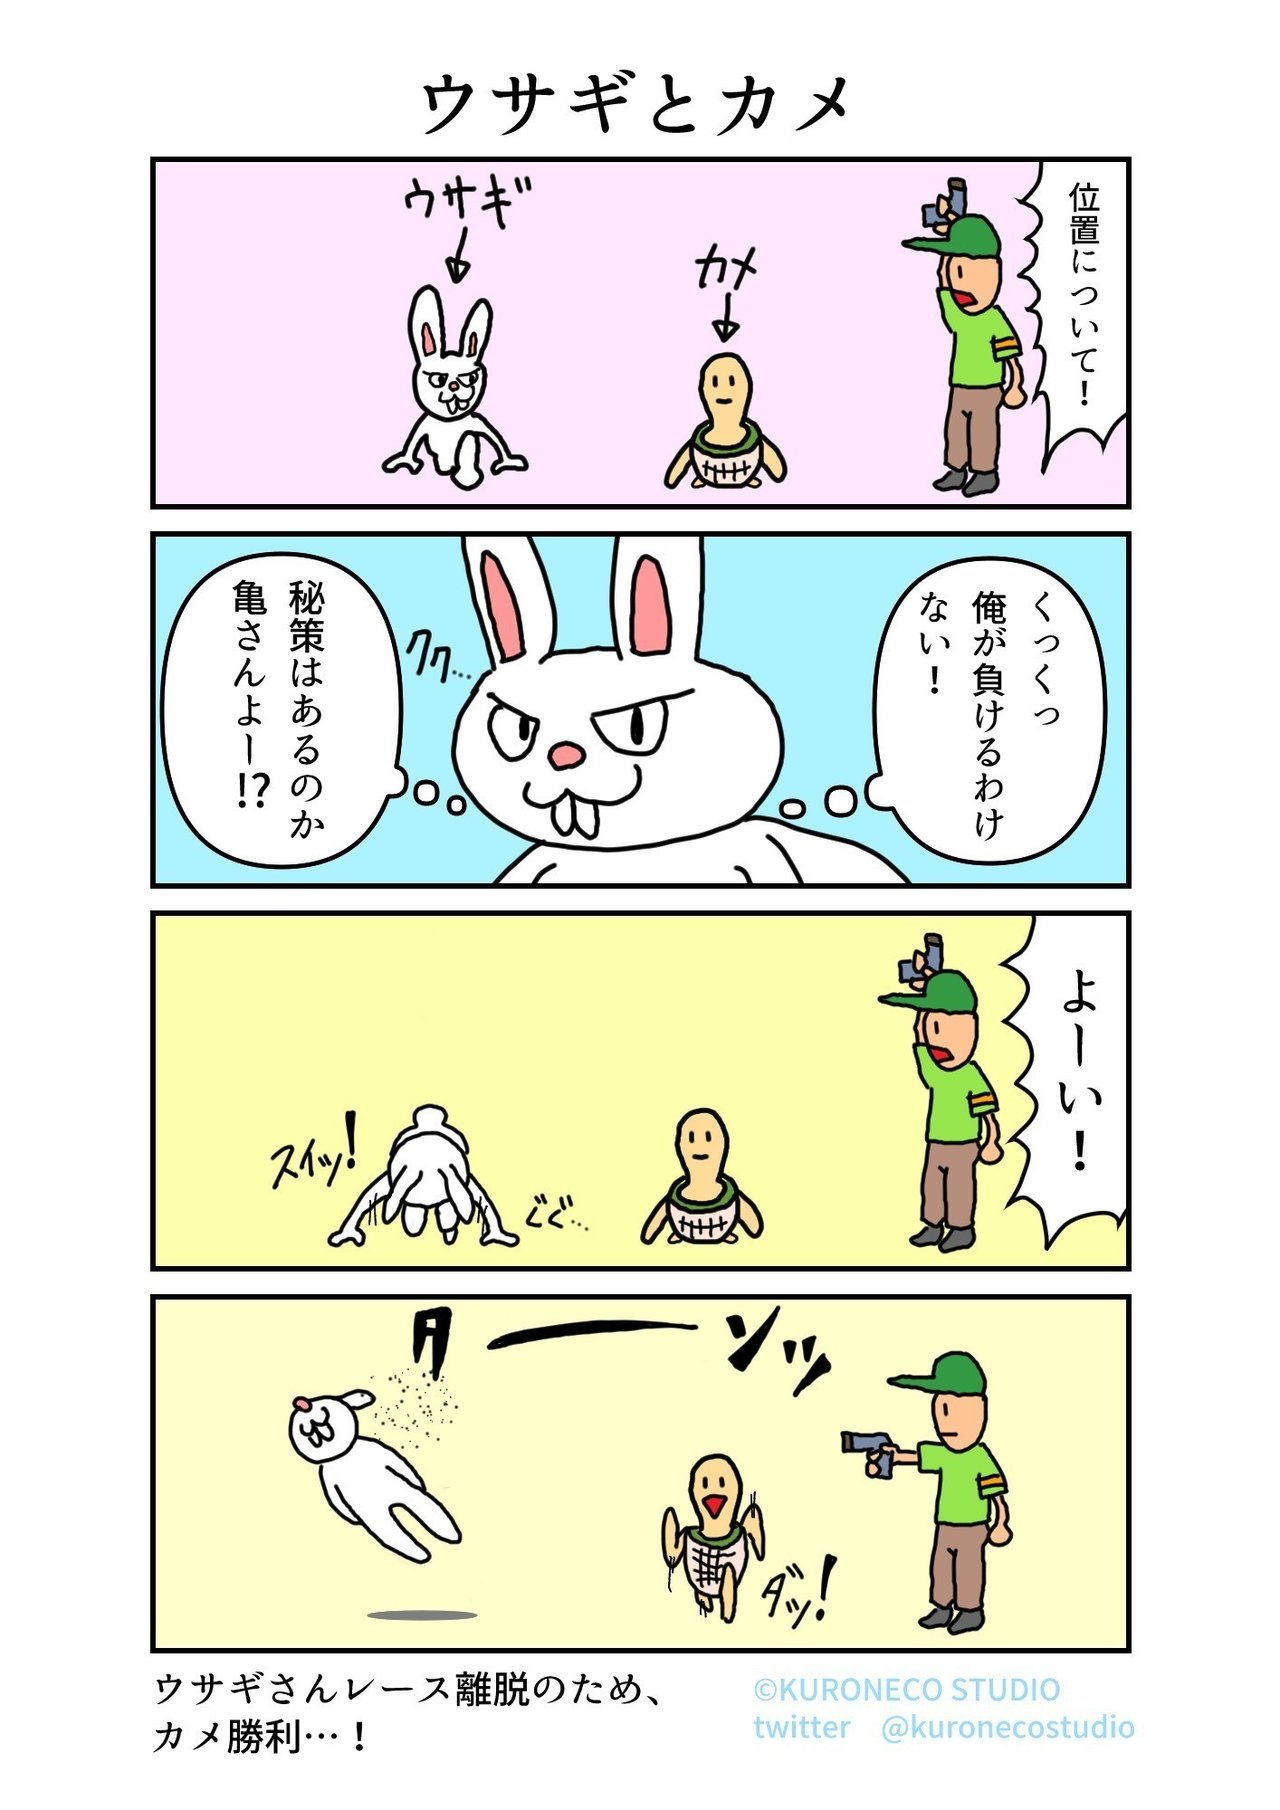 4コマ漫画 ウサギとカメ Nekoyama Webcomic Artist Note